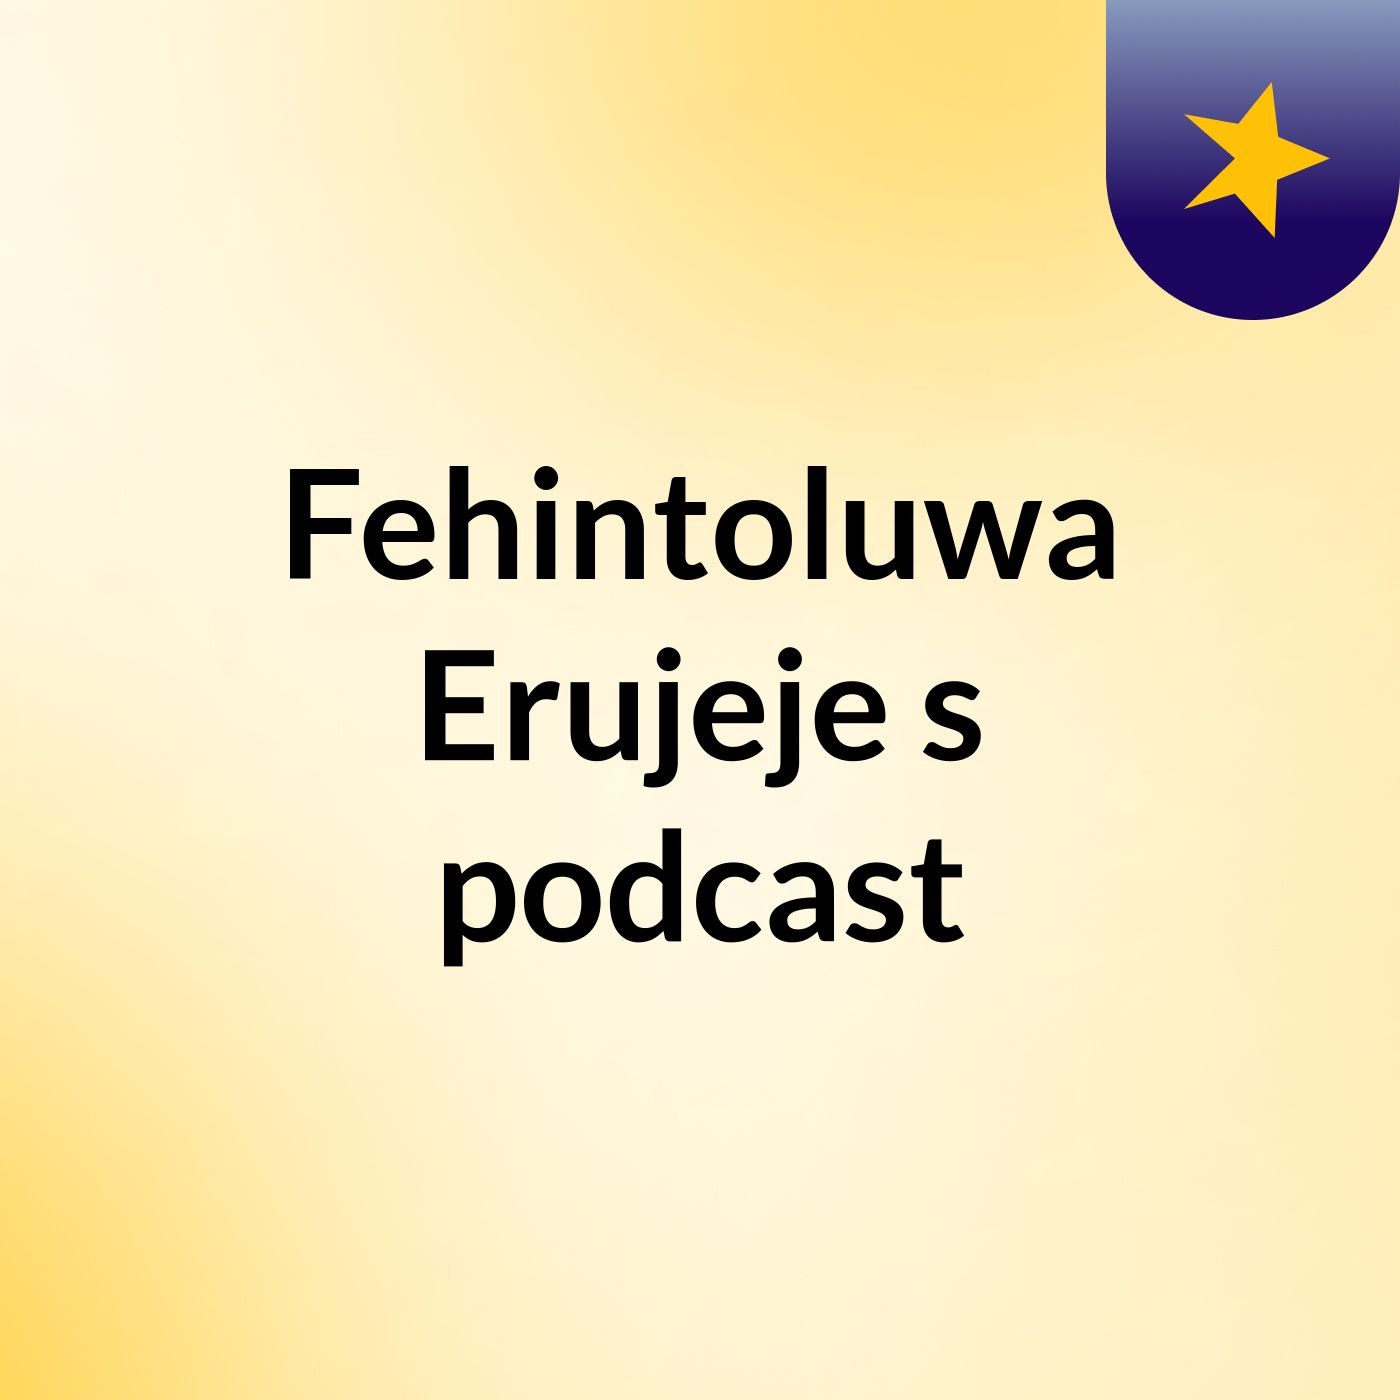 Fehintoluwa Erujeje's podcast